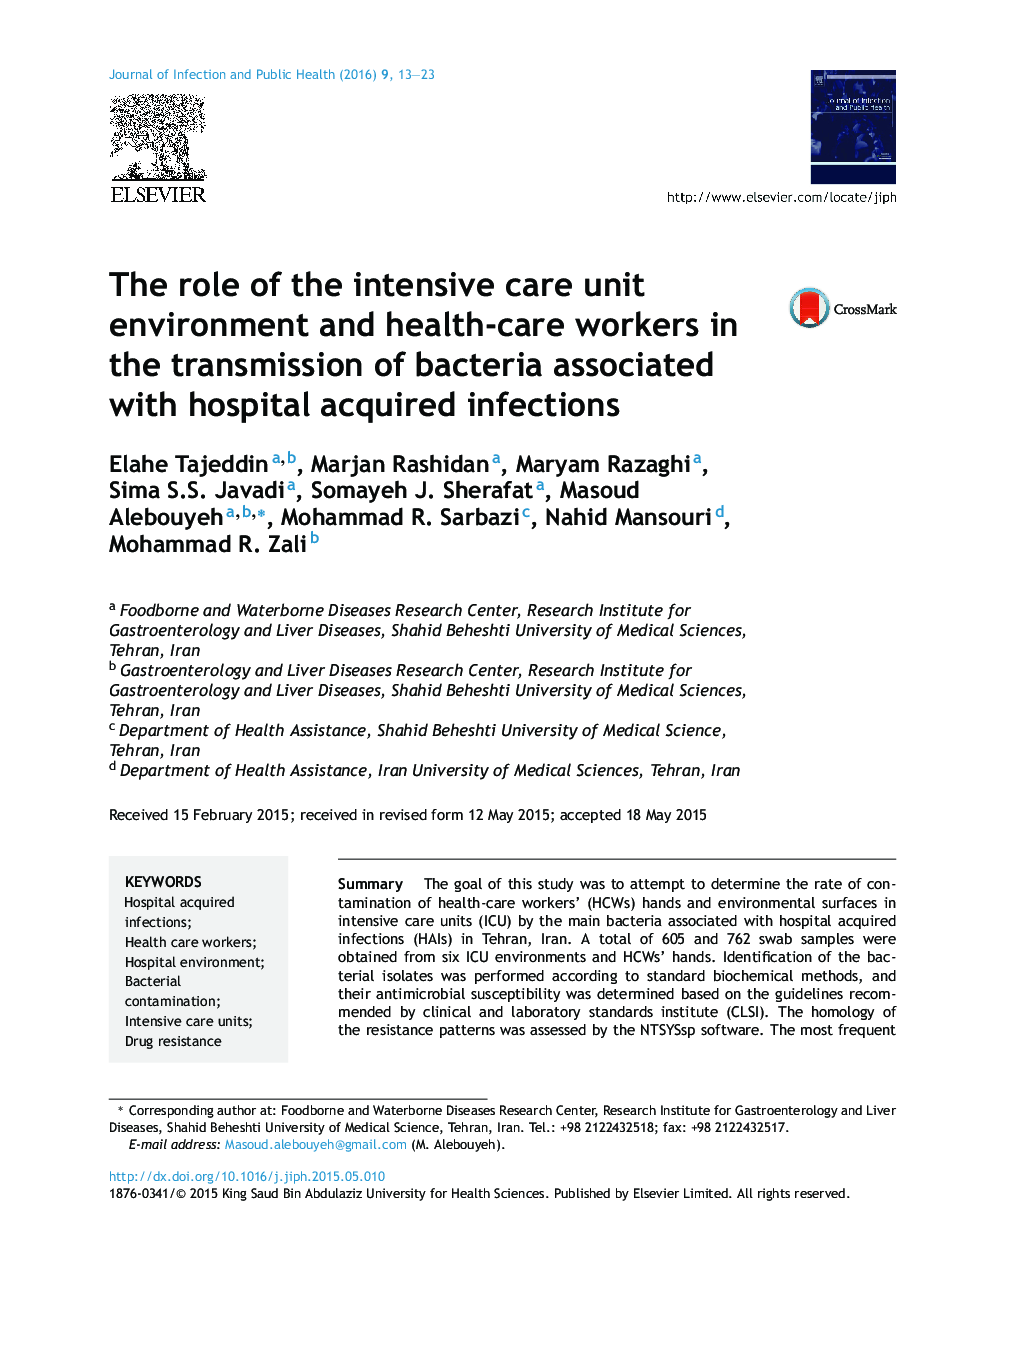 نقش محیط بخش مراقبت ویژه و کارکنان مراقبت های بهداشتی در انتقال باکتری های مرتبط با عفونت های بیمارستانی